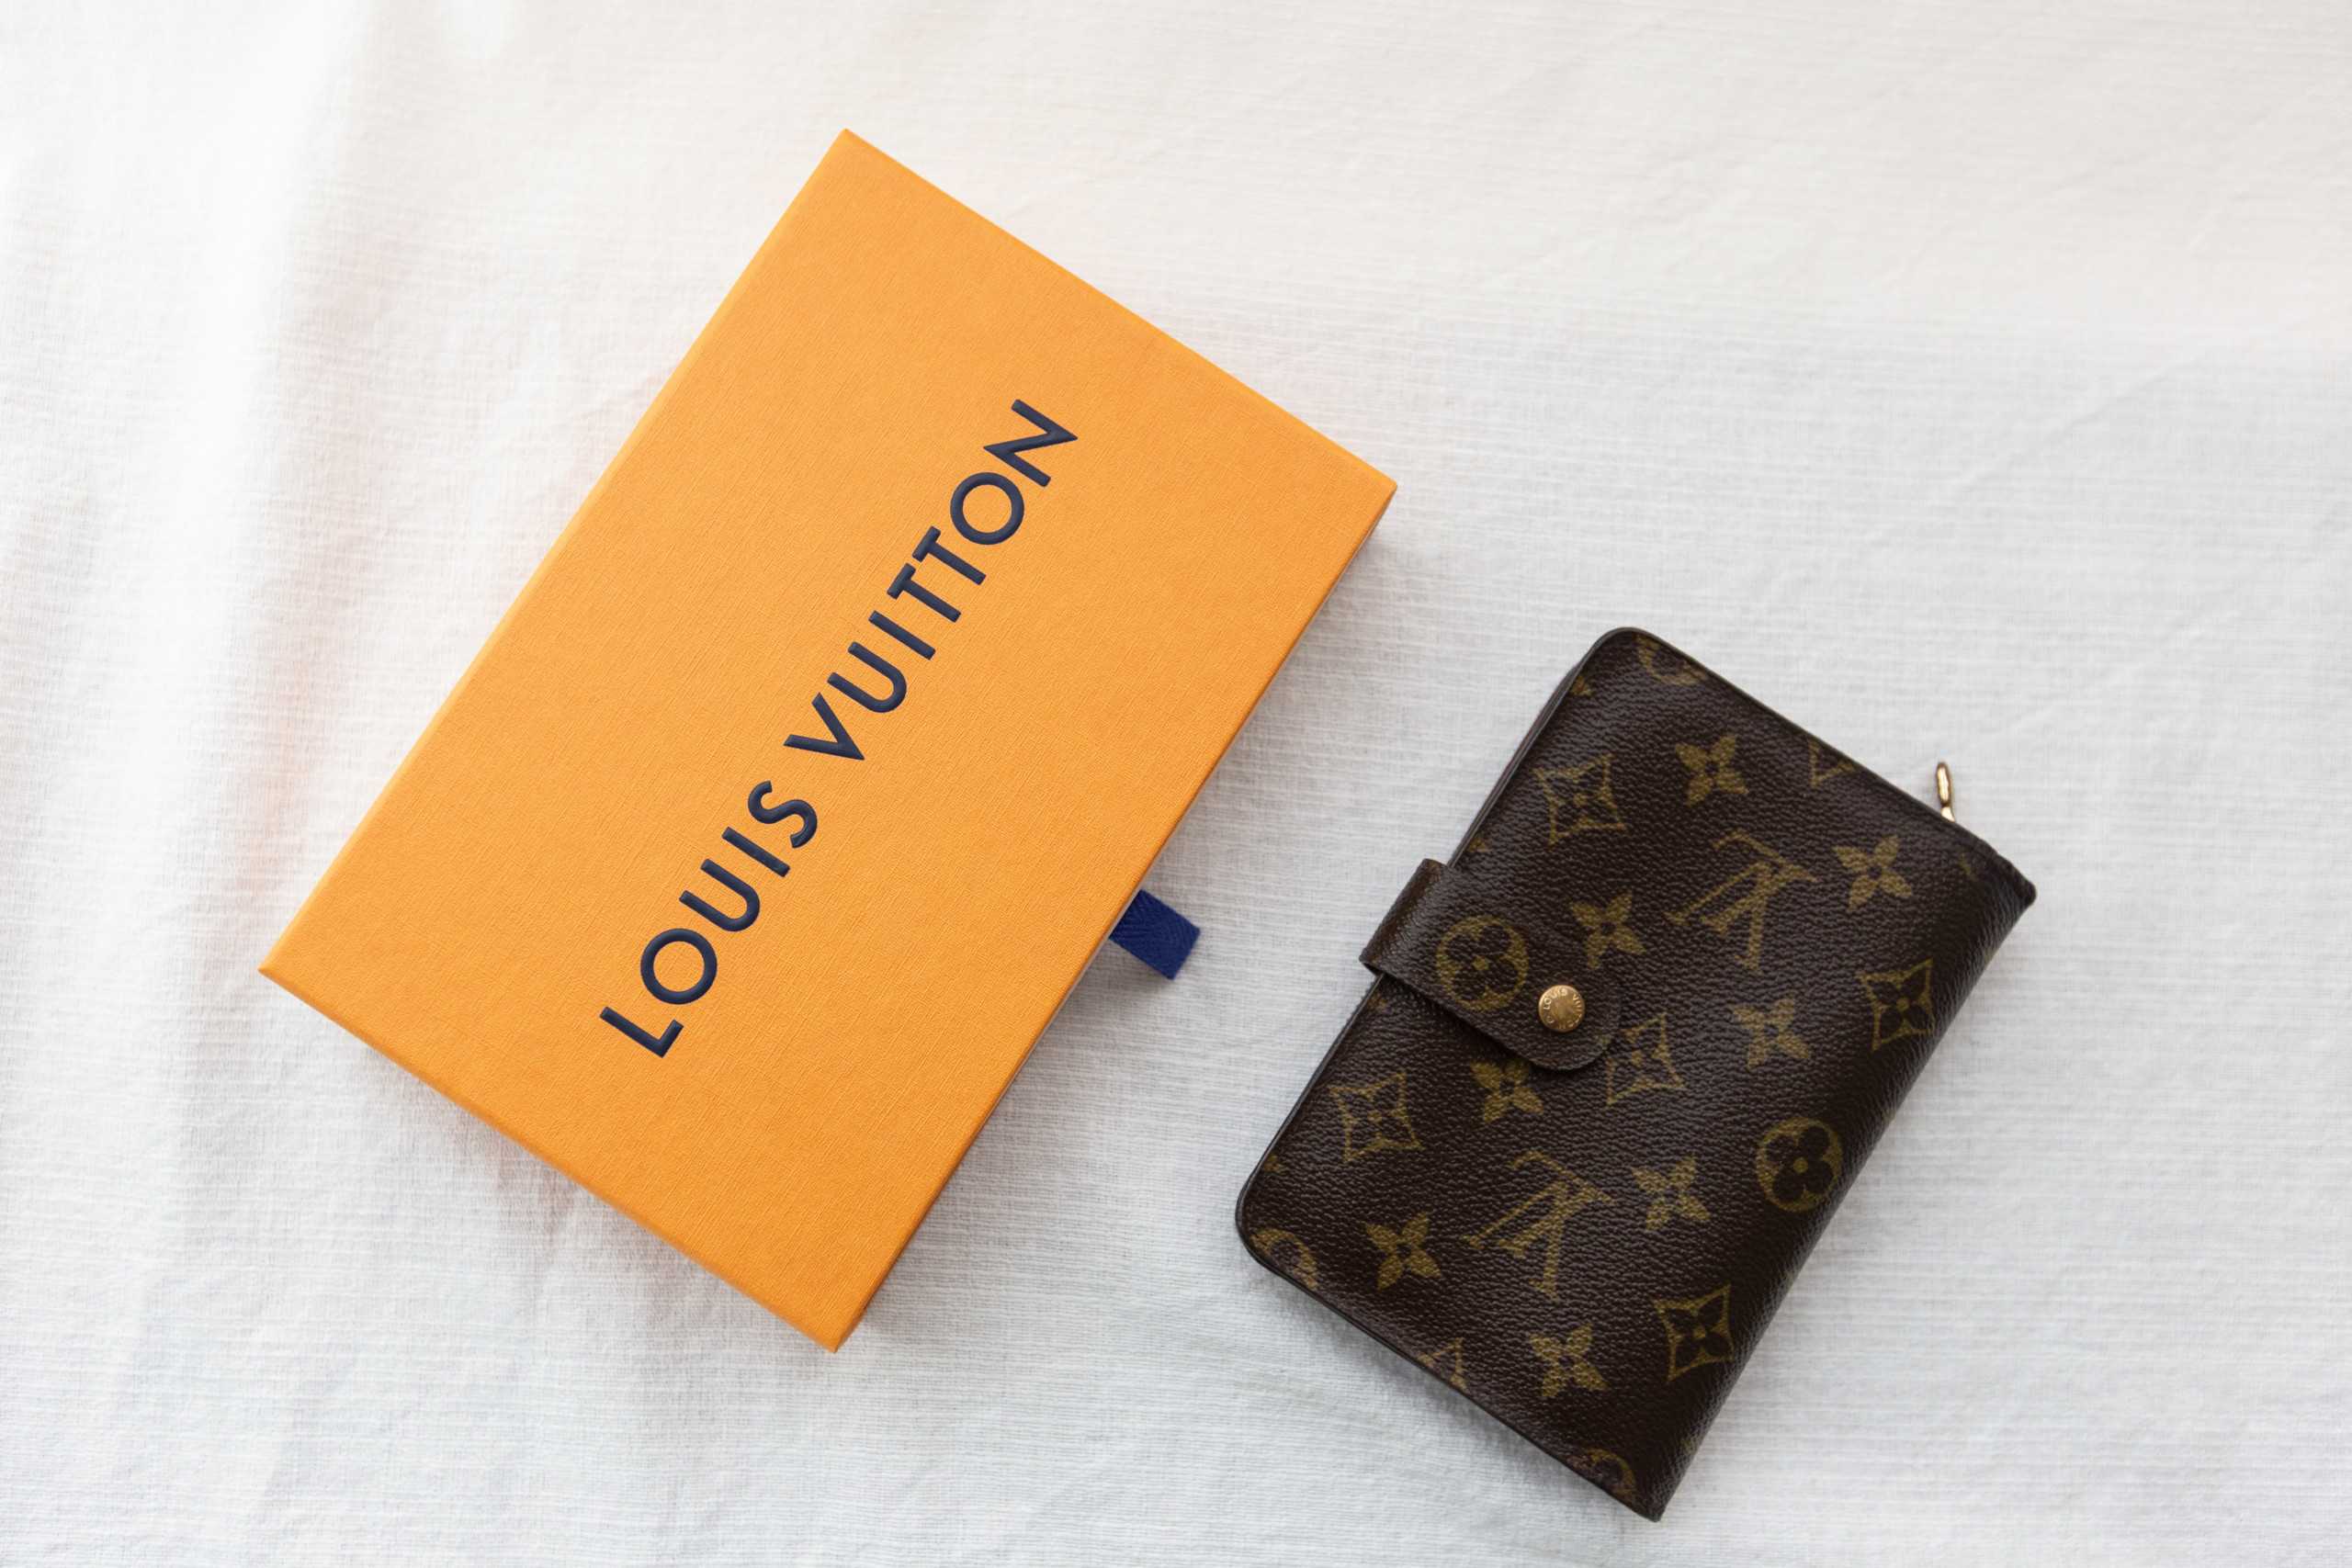 Der Umsatz von Louis Vuitton übertrifft die Erwartungen – Luxus geht immer!